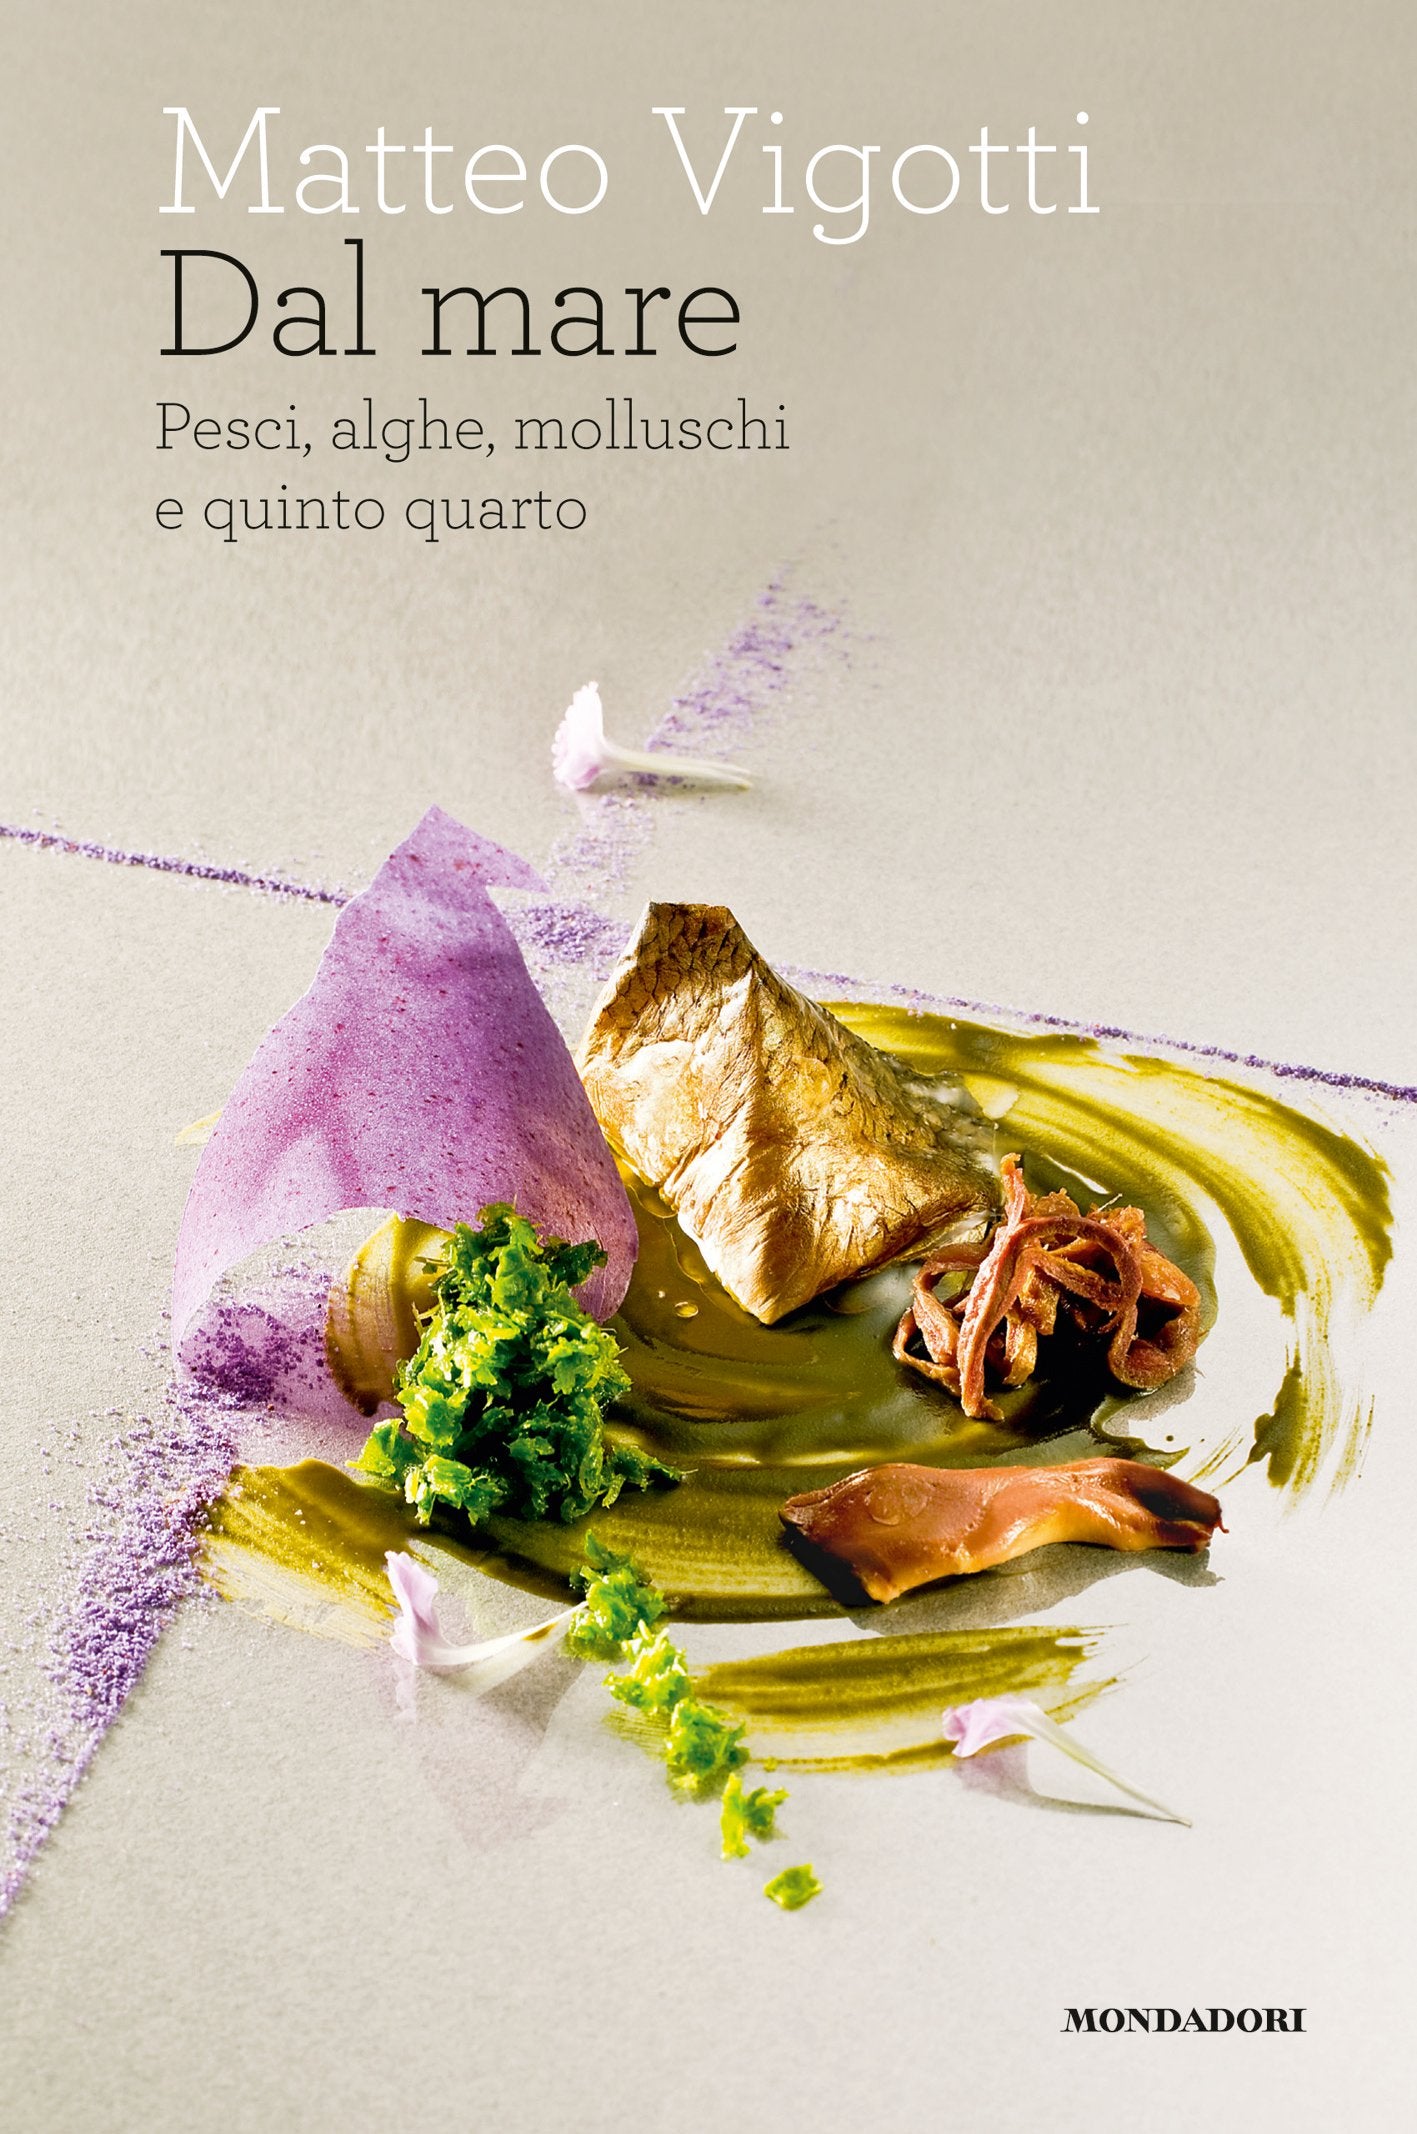 Dal mare: Pesci, alghe, molluschi e quinto quarto (Matteo Vigotti)